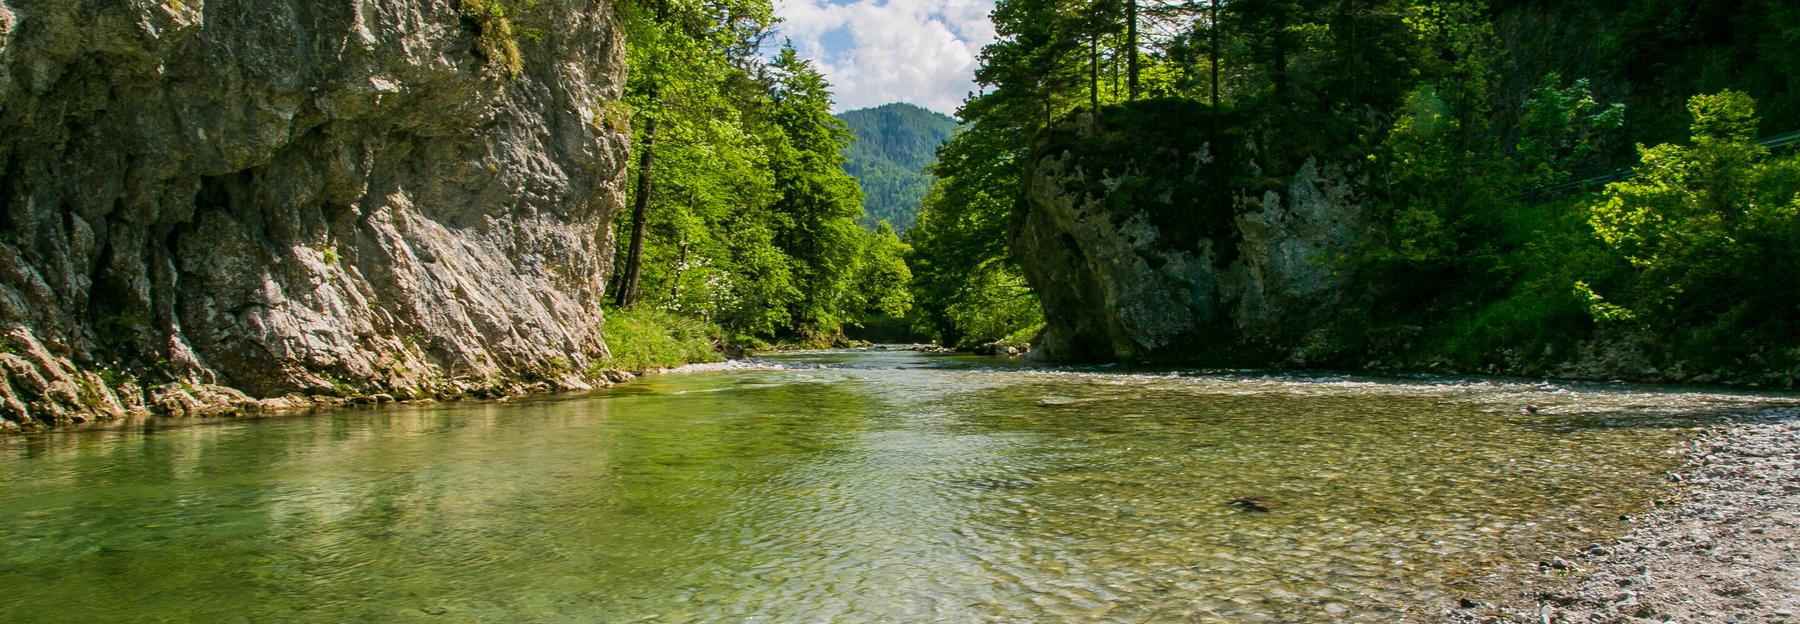 Idyllischer Flußlauf im Naturpark Mürzer Oberland